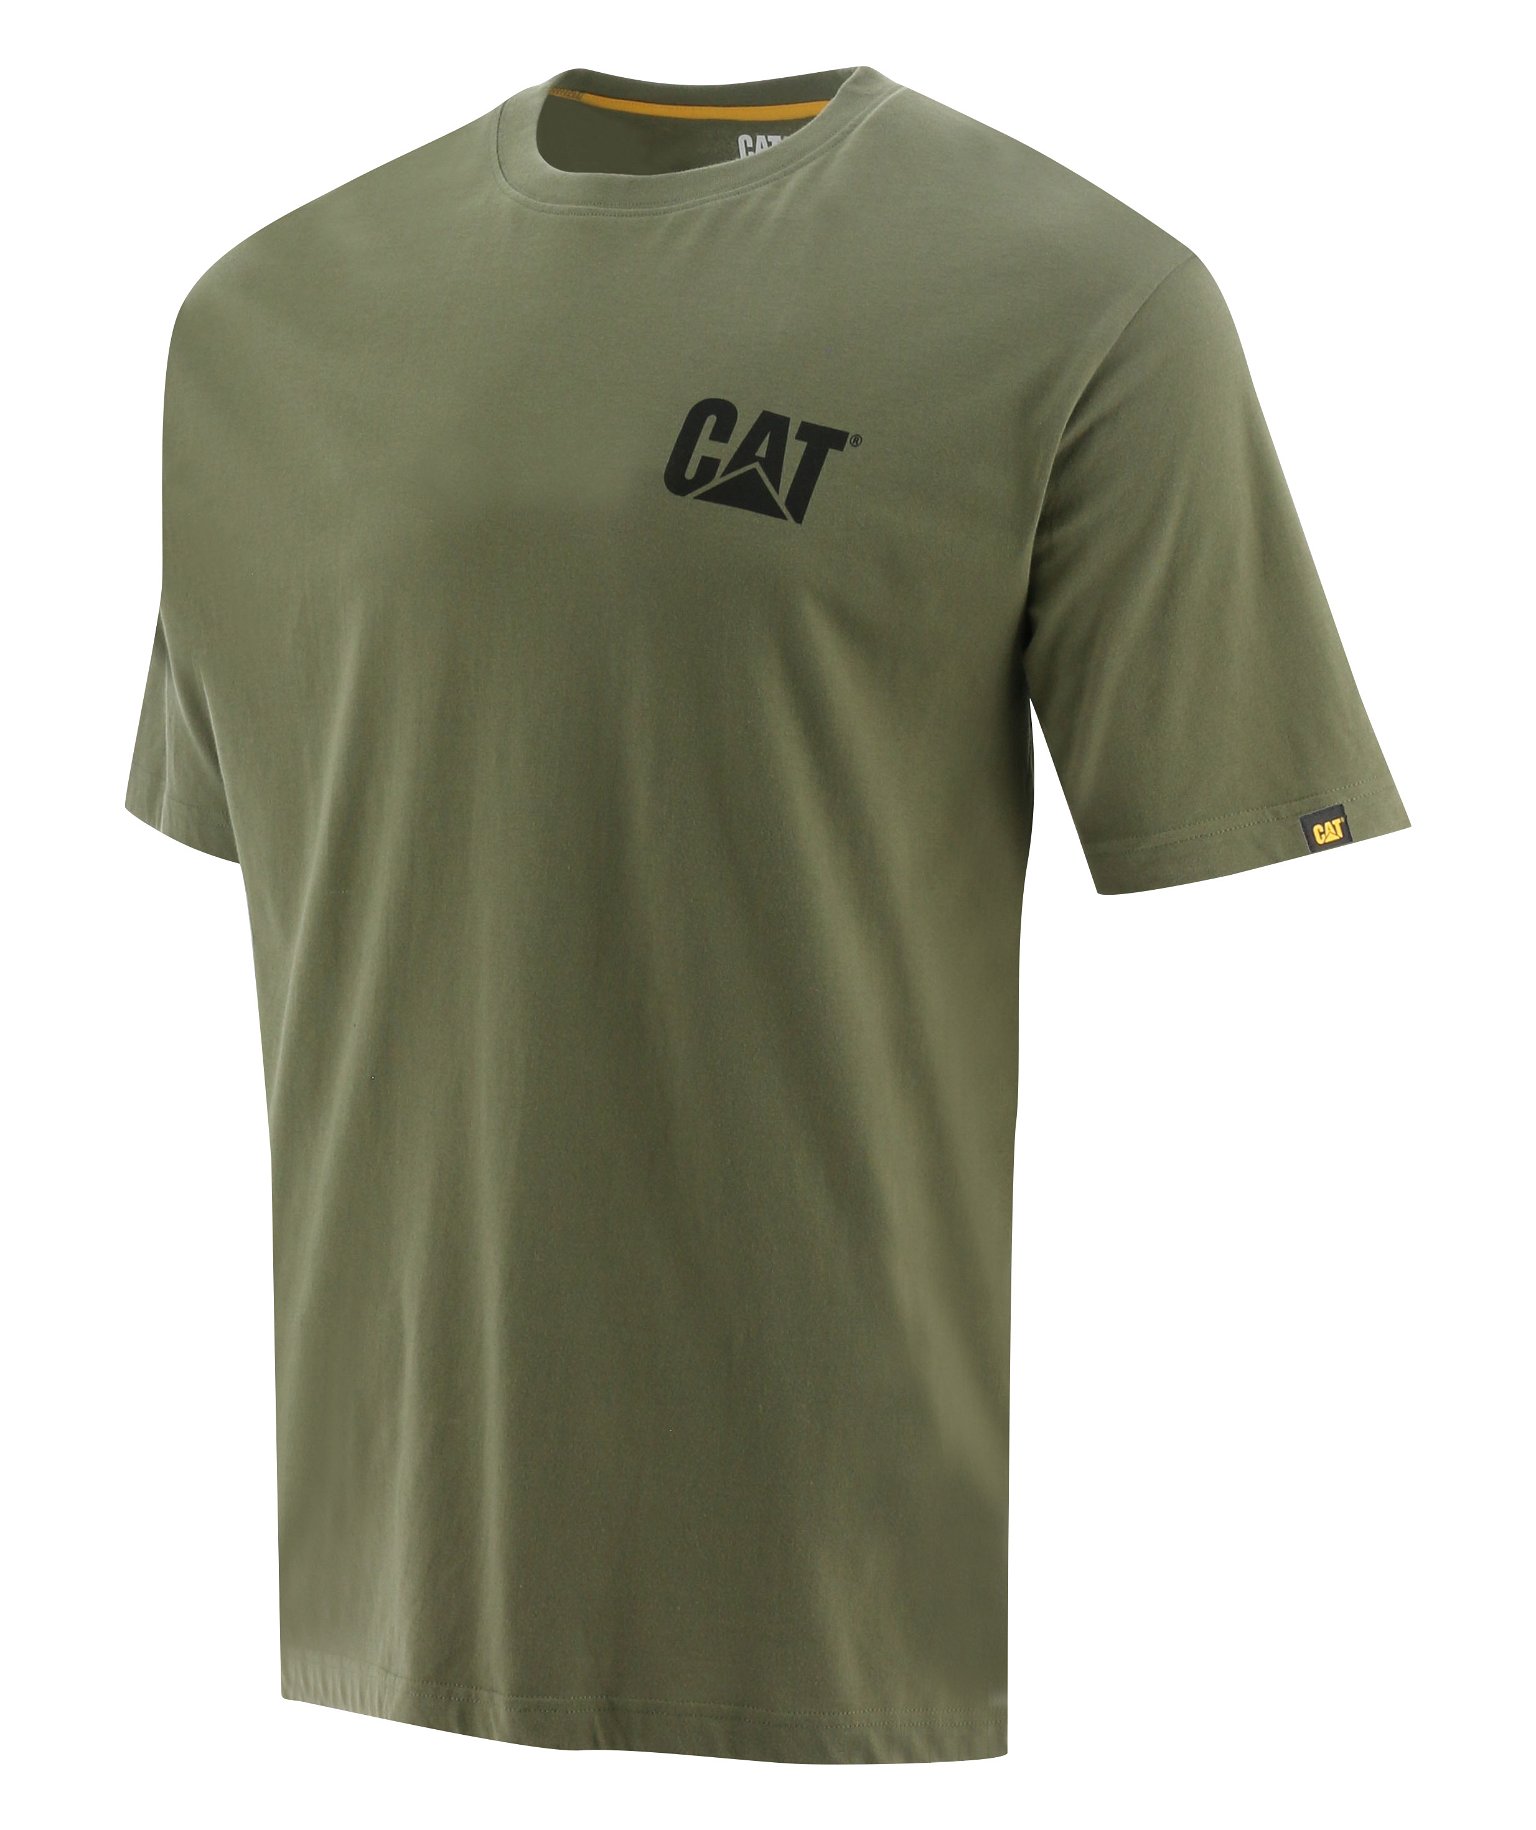 Vyriški marškinėliai trumpomis rankovėmis CAT, chaki spalvos, L dydis